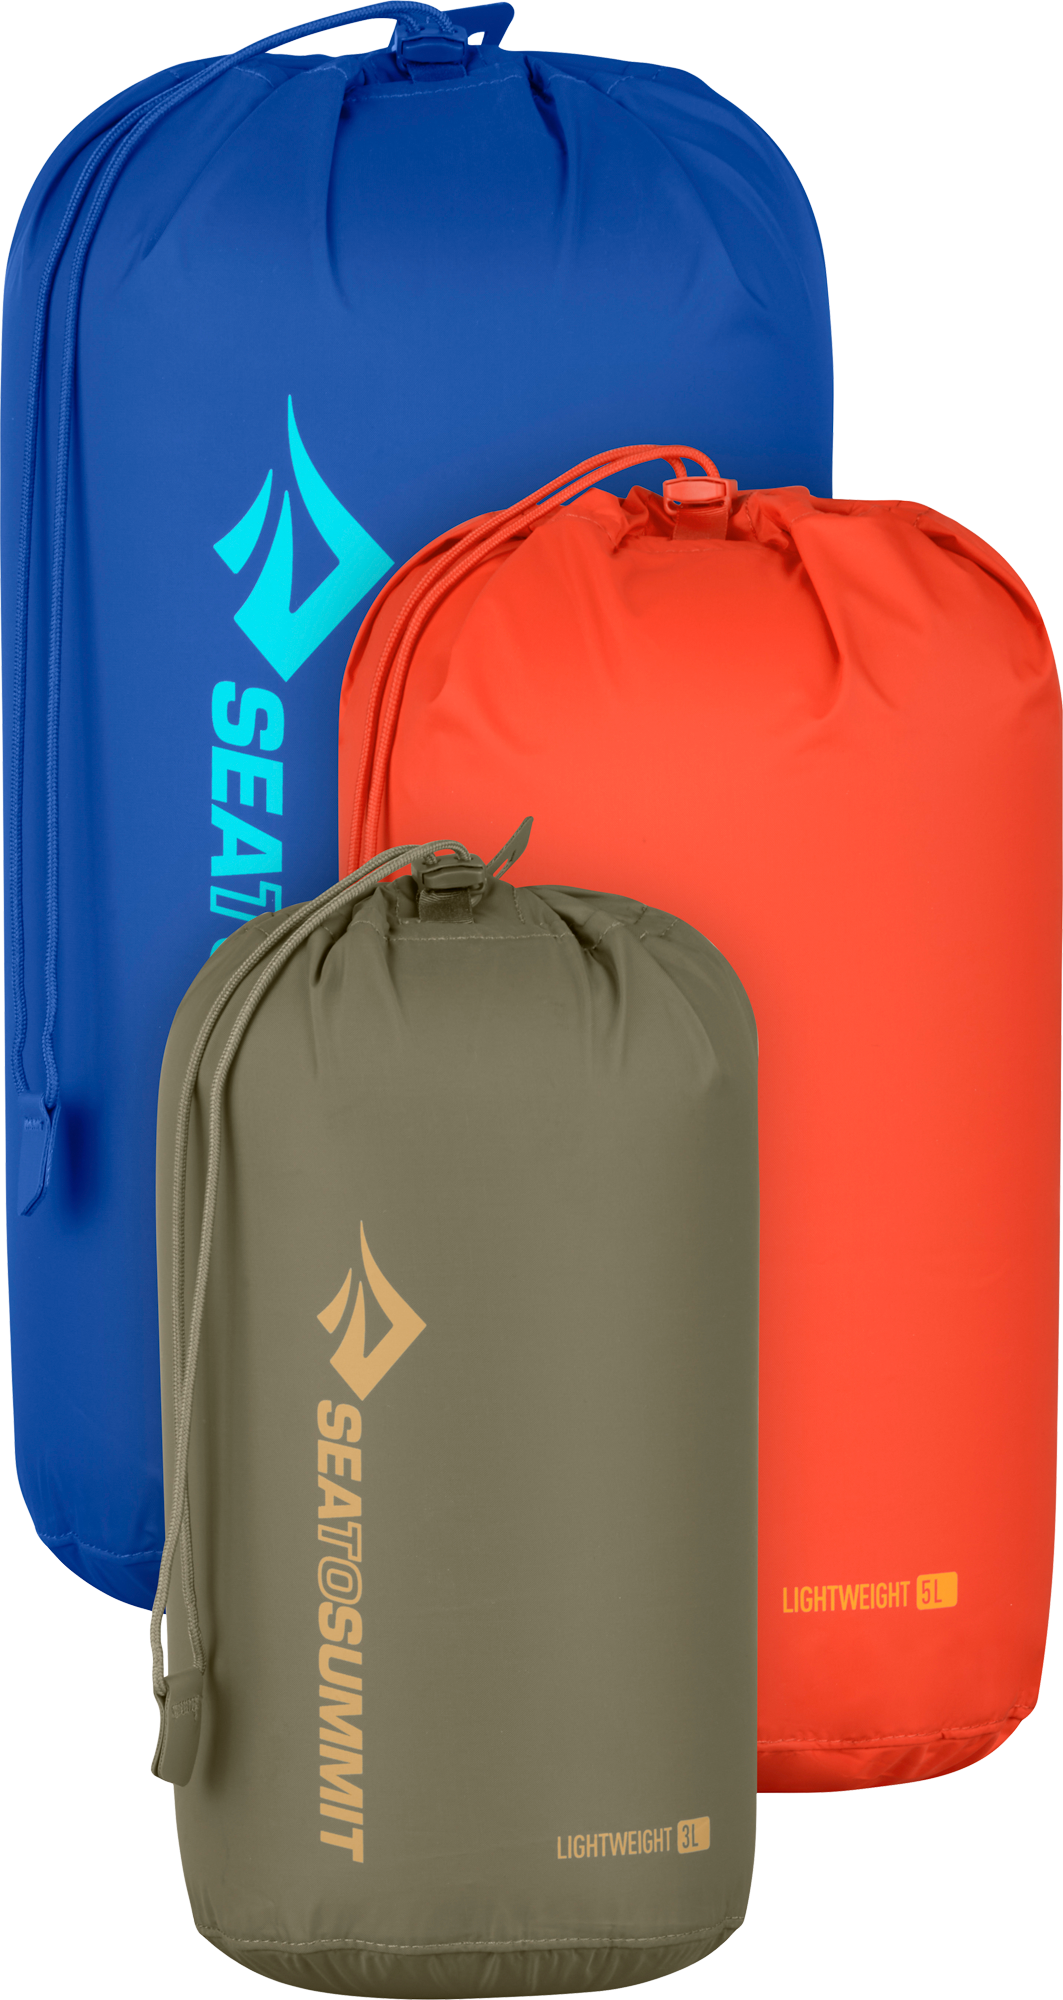 Sea to Summit Lightweight Dry Bag Packtaschenset 3 teilig 3 / 5 / 8 Liter Burnt Olive / Spicy Orange / Surf the Web